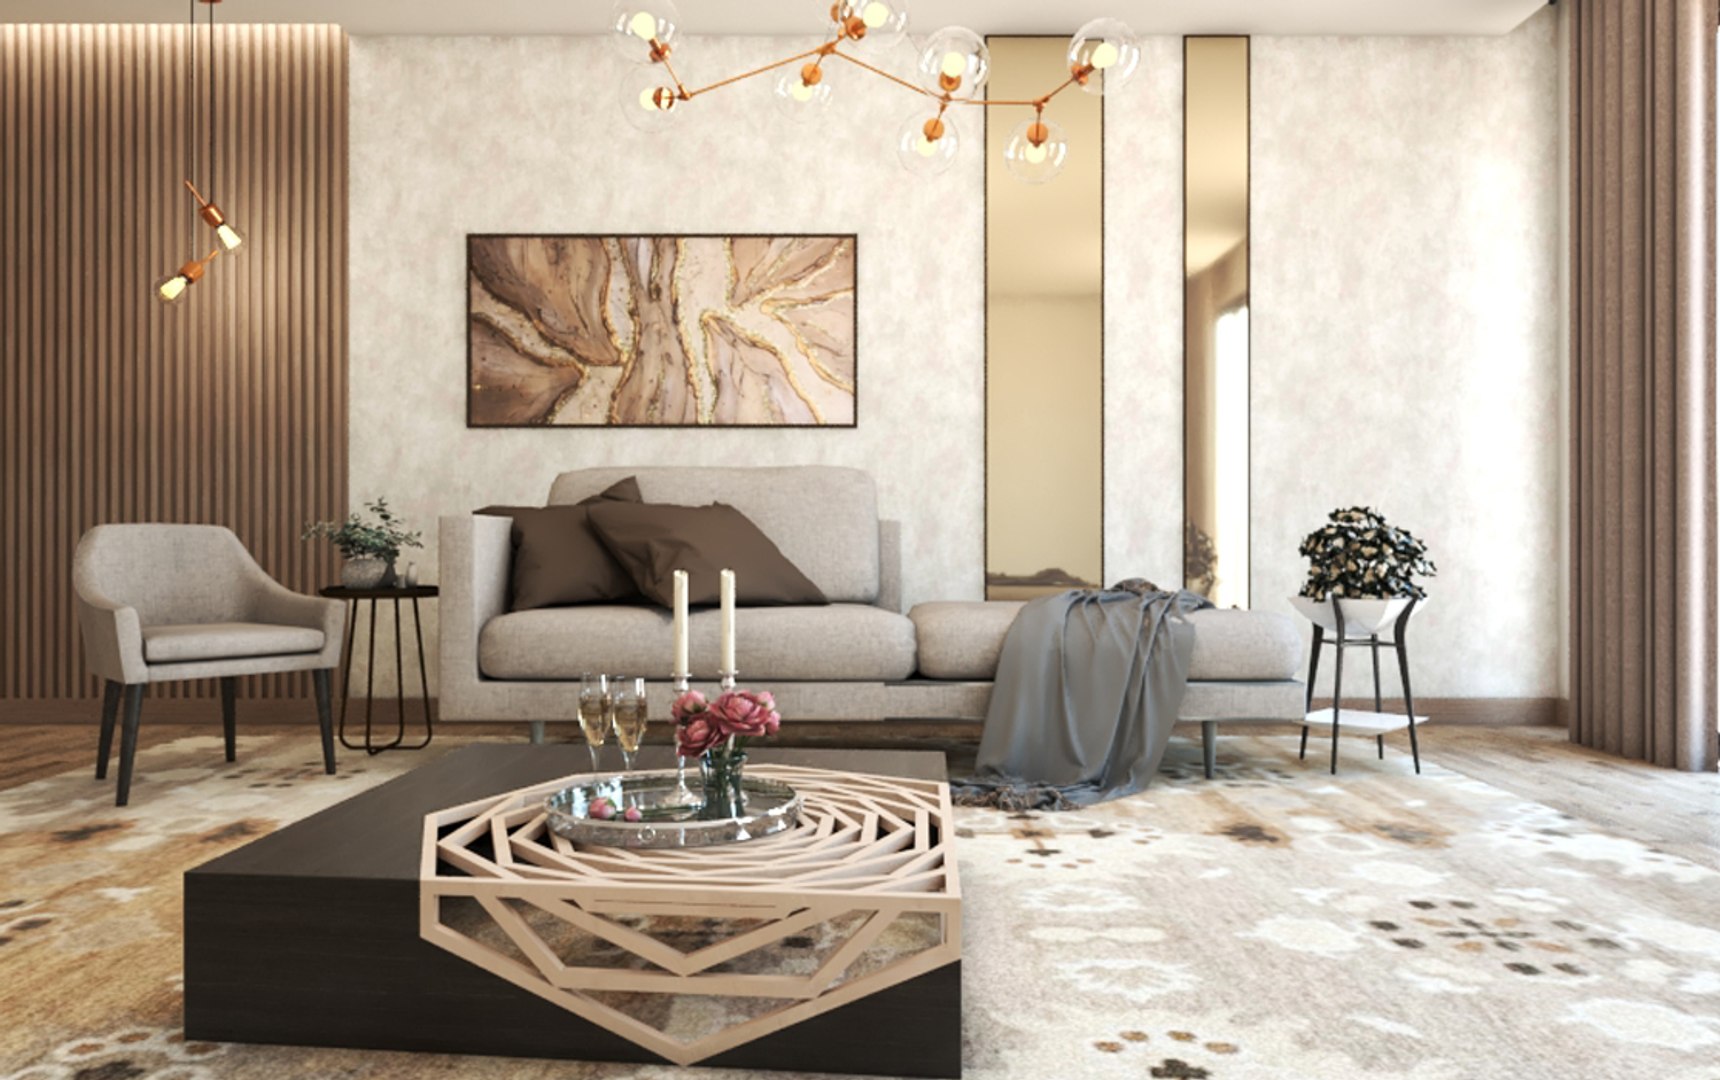 Livingroomdecor design interior model - TurboSquid 1643970